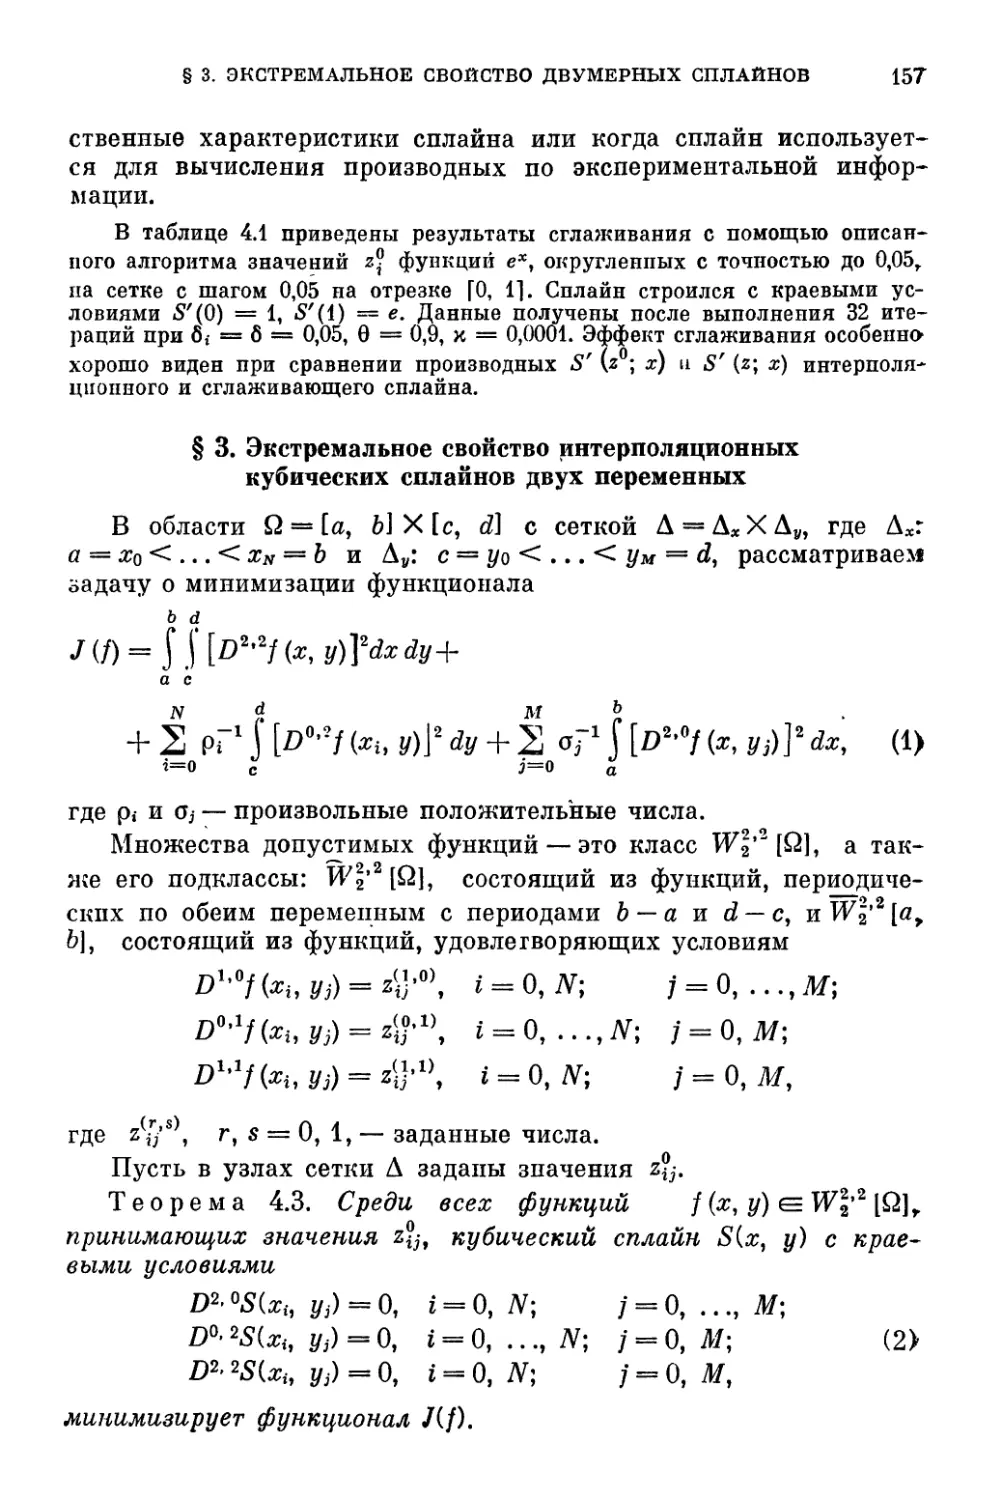 § 3. Экстремальное свойство интерполяционных кубических сплайнов двух переменных